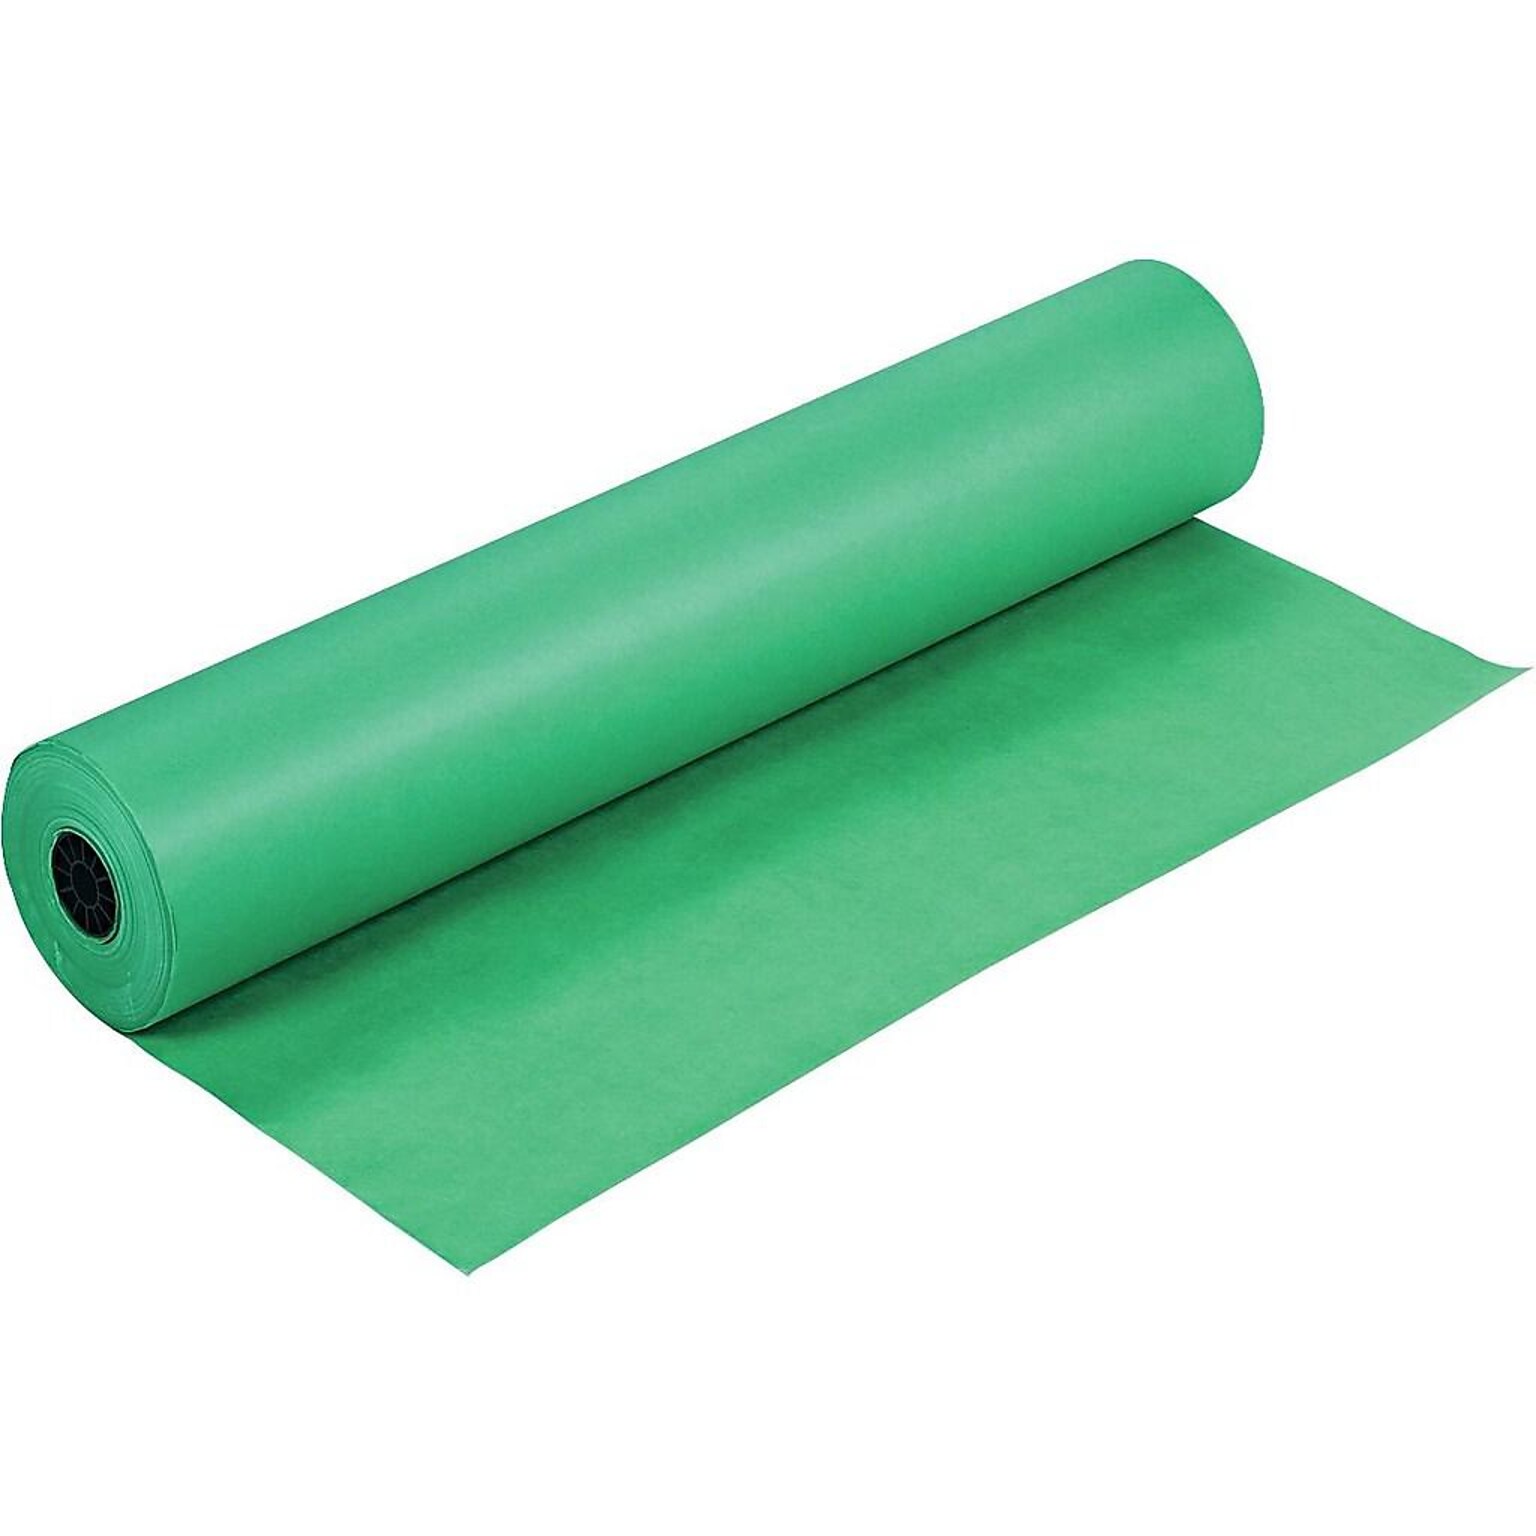 Rainbow Duo-Finish Paper Roll, 36W x 1000L, Bright Green (0063130)